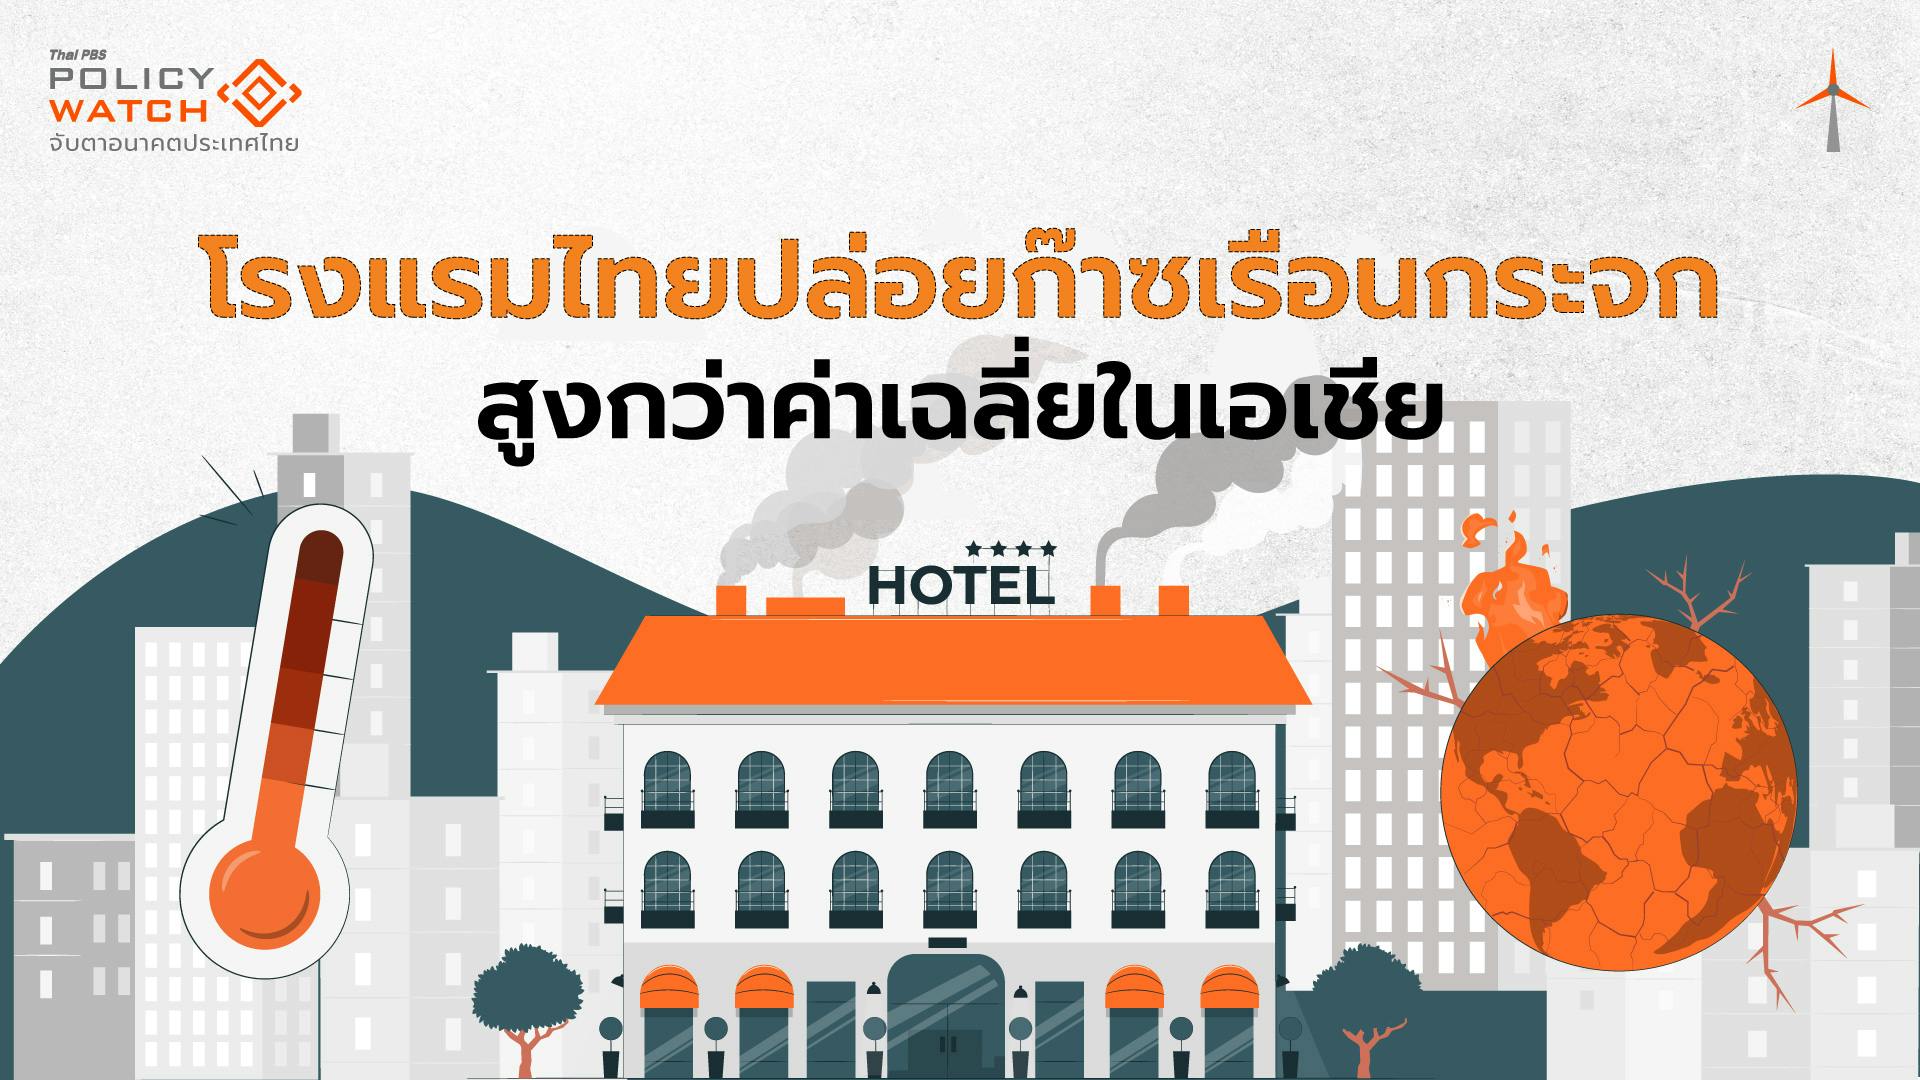 เปลี่ยนผ่านสู่ความยั่งยืน ความท้าทายธุรกิจโรงแรมไทย